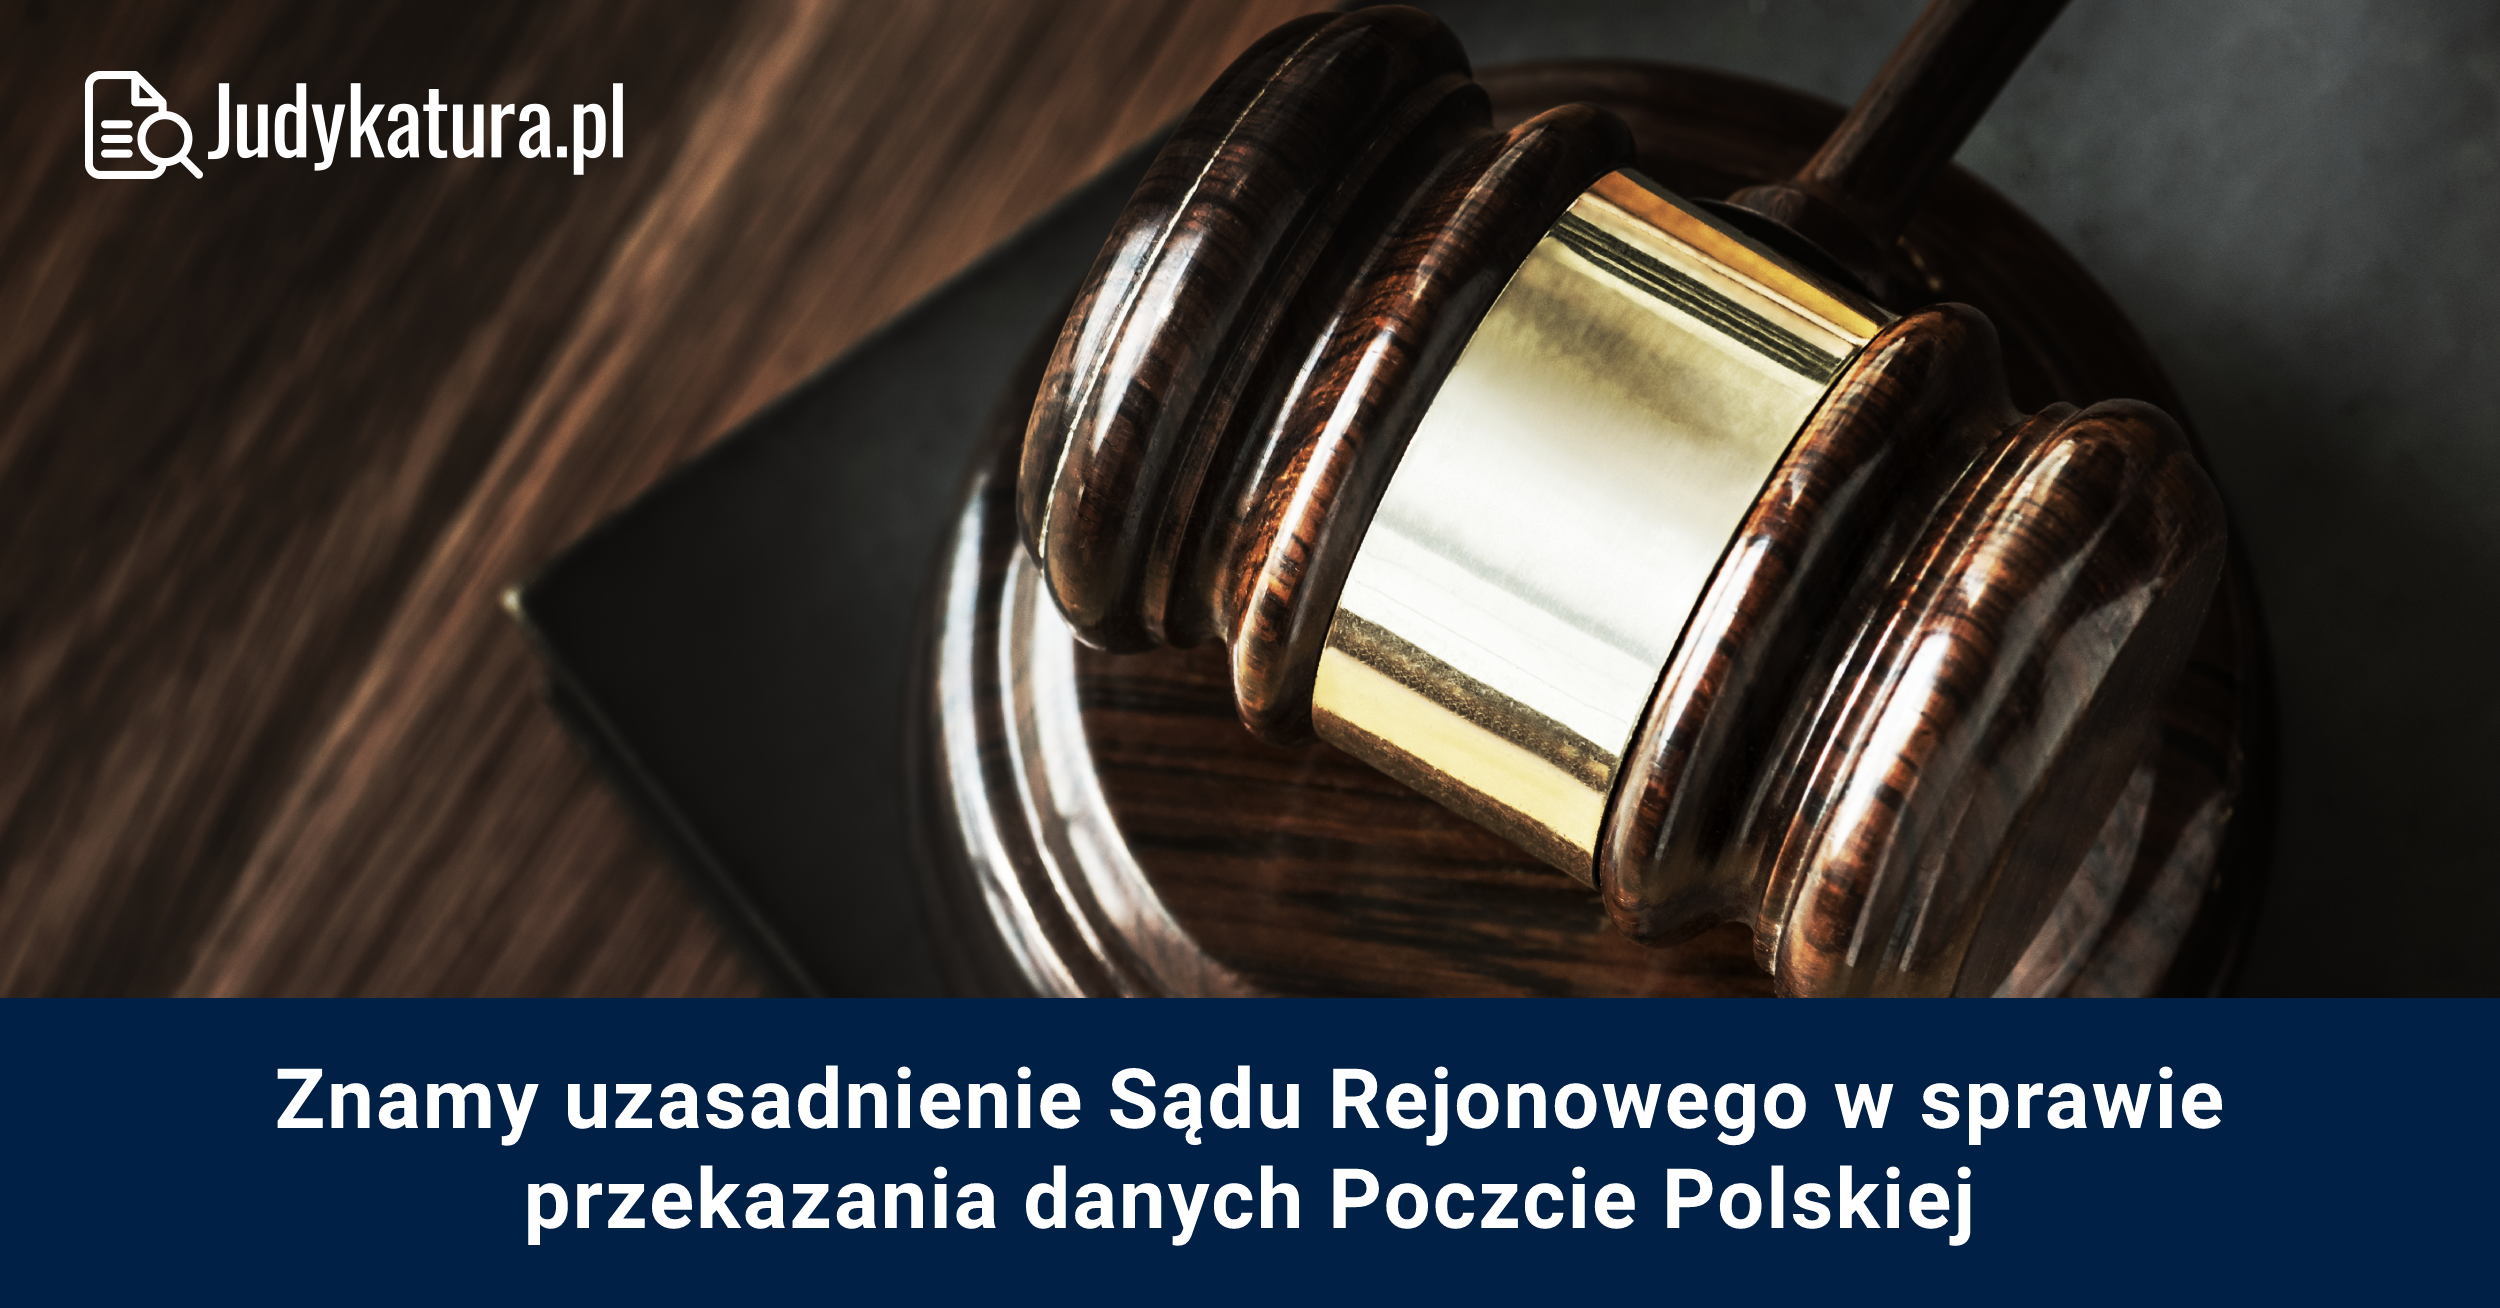 Znamy uzasadnienie Sądu Rejonowego w sprawie przekazania danych Poczcie Polskiej